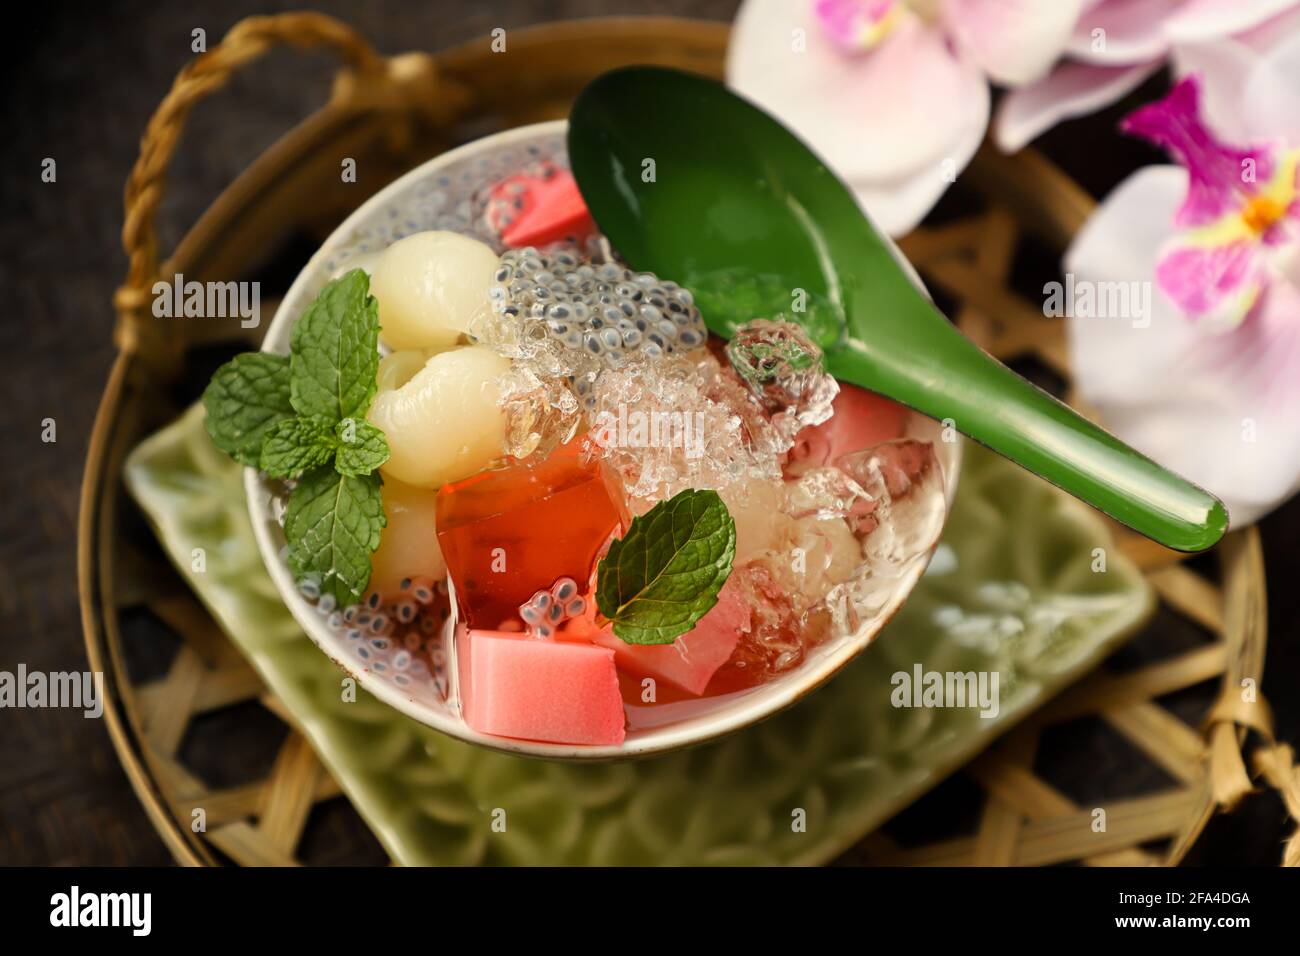 Gelatina longan ghiacciata. Frutta longana conservata sciroppata con gelatina rossa, agar latte e ghiaccio tritato Foto Stock